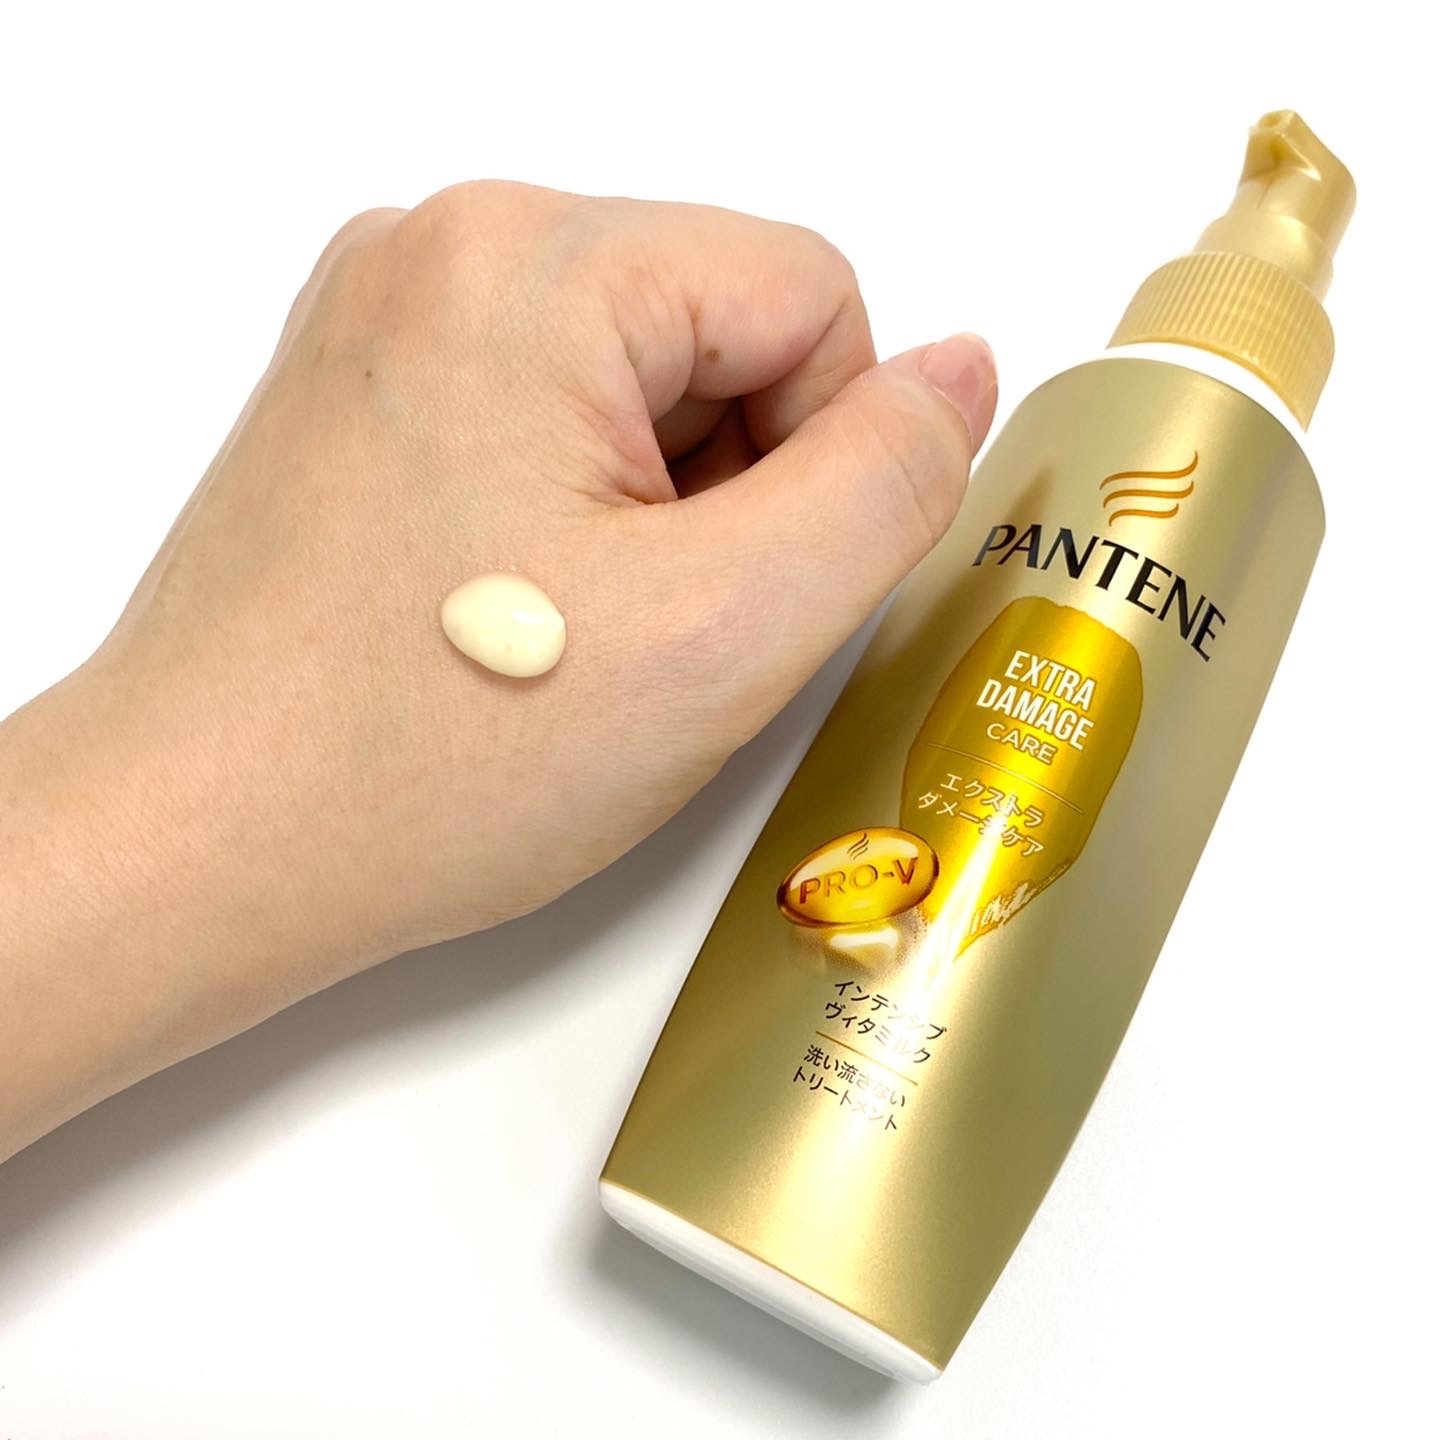 PANTENE(パンテーン) エクストラダメージケア インテンシブヴィタミルクの良い点・メリットに関するminoriさんの口コミ画像3